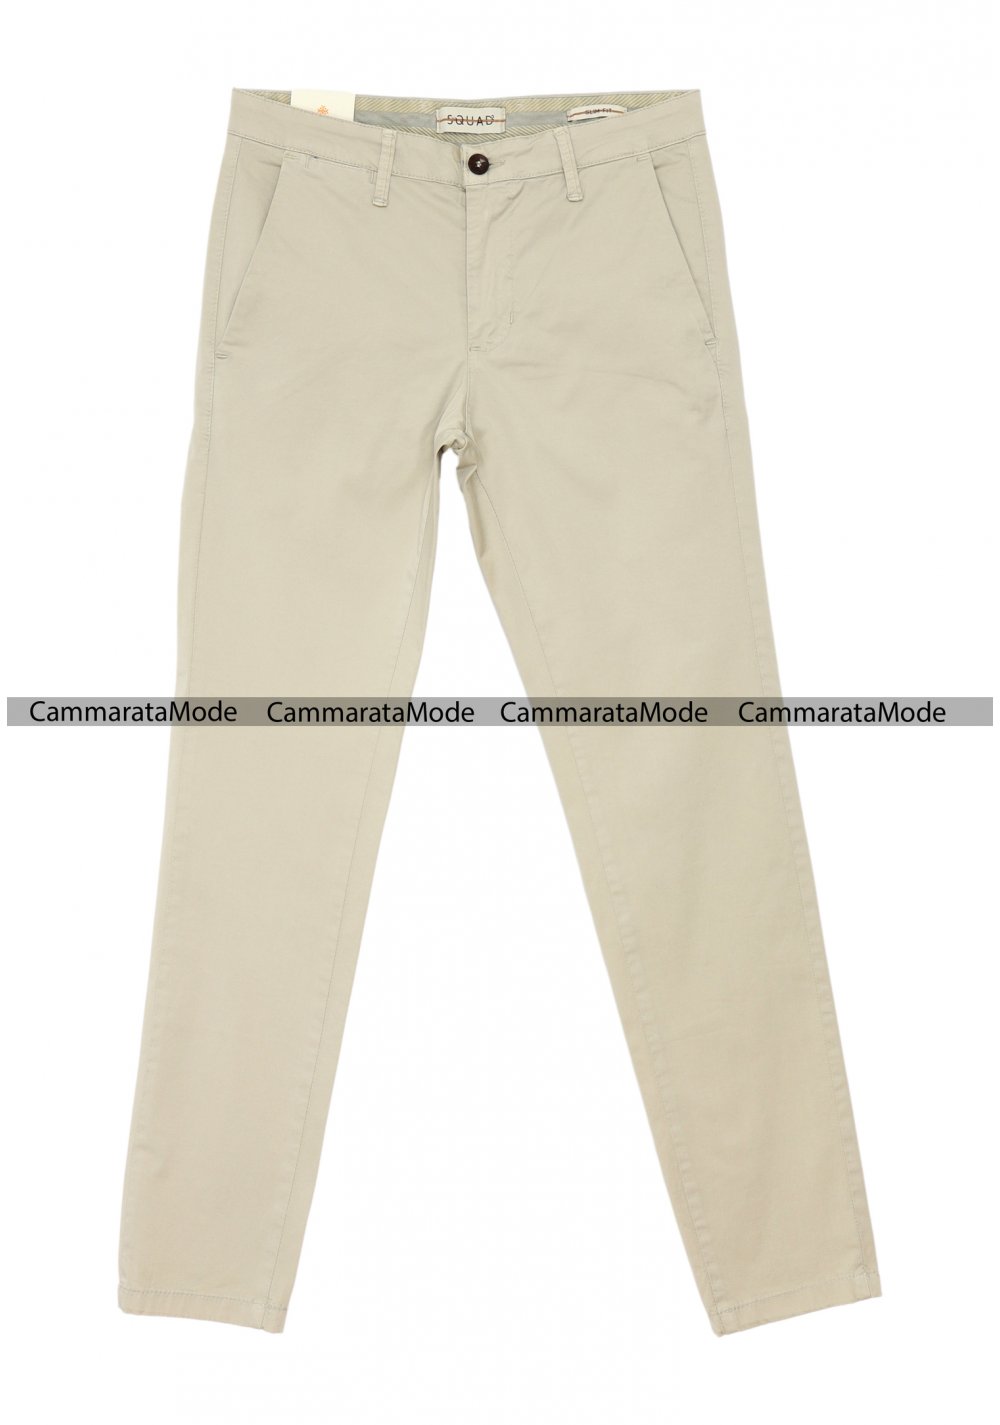 SQUAD2 uomo CUBA - Pantalone beige tasche america, slim fit cotone elastico